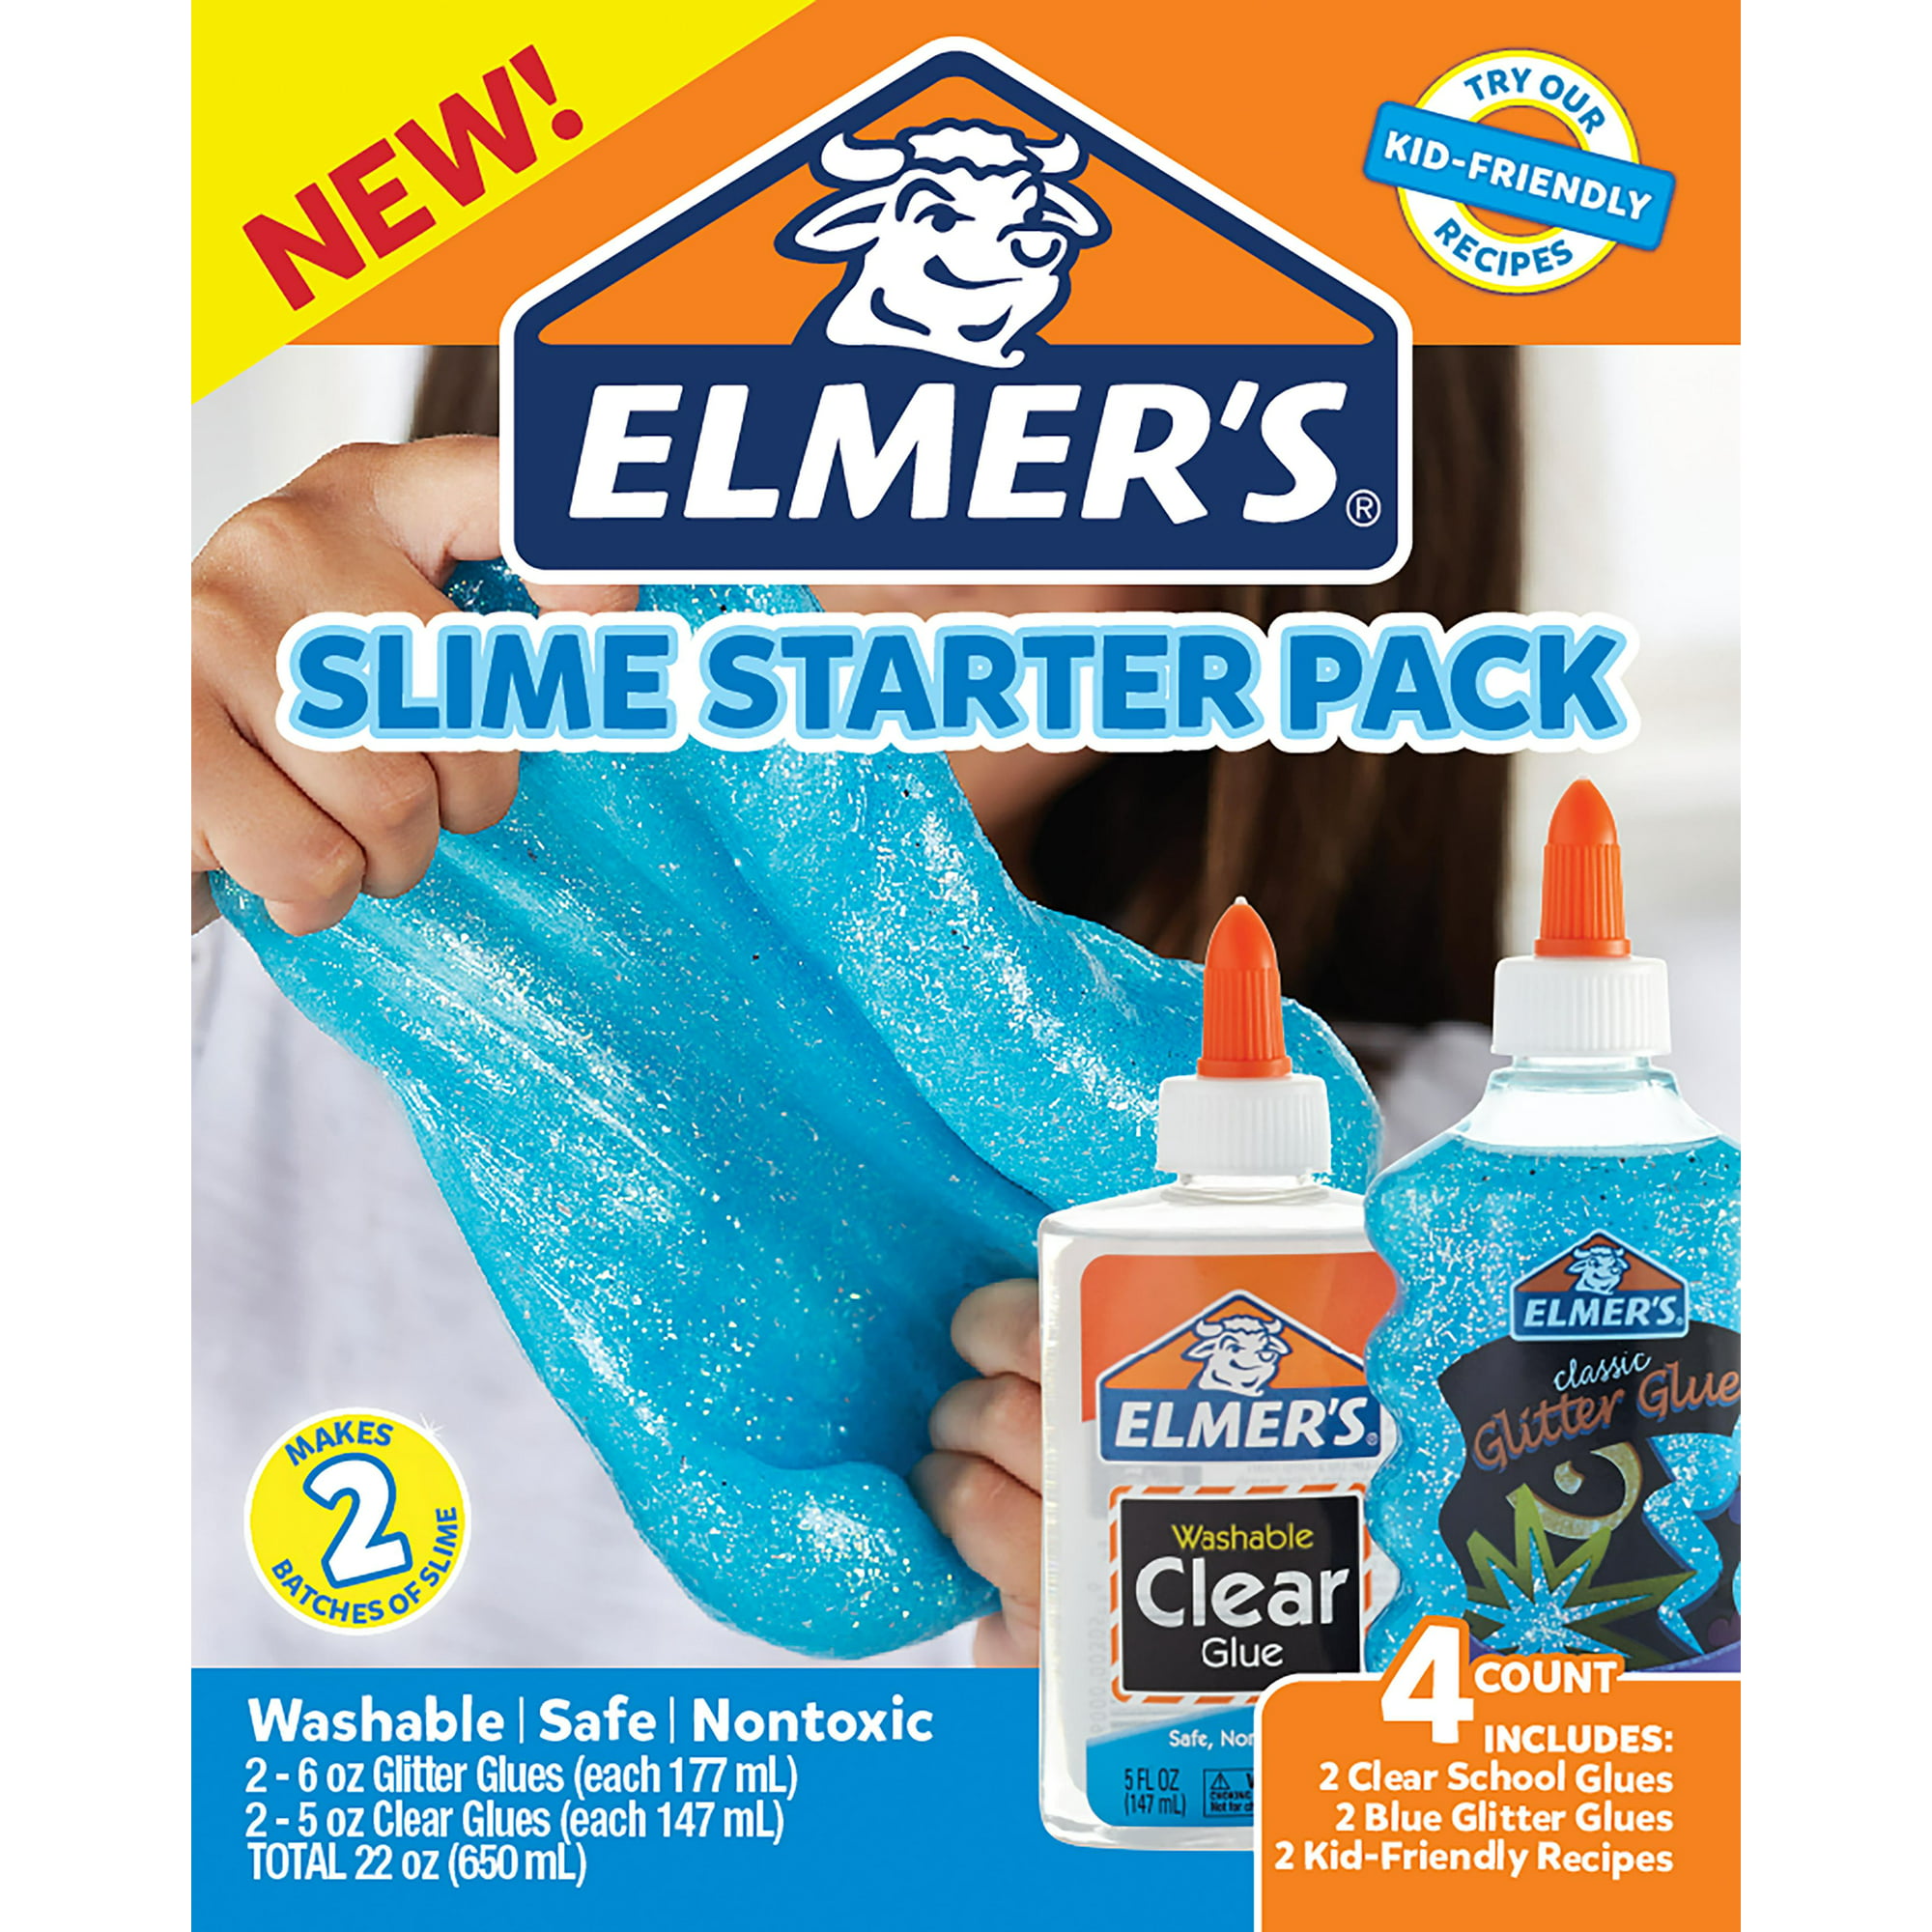 Elmer's Translucent Color Slime Making Kit with Blue Washable Glue